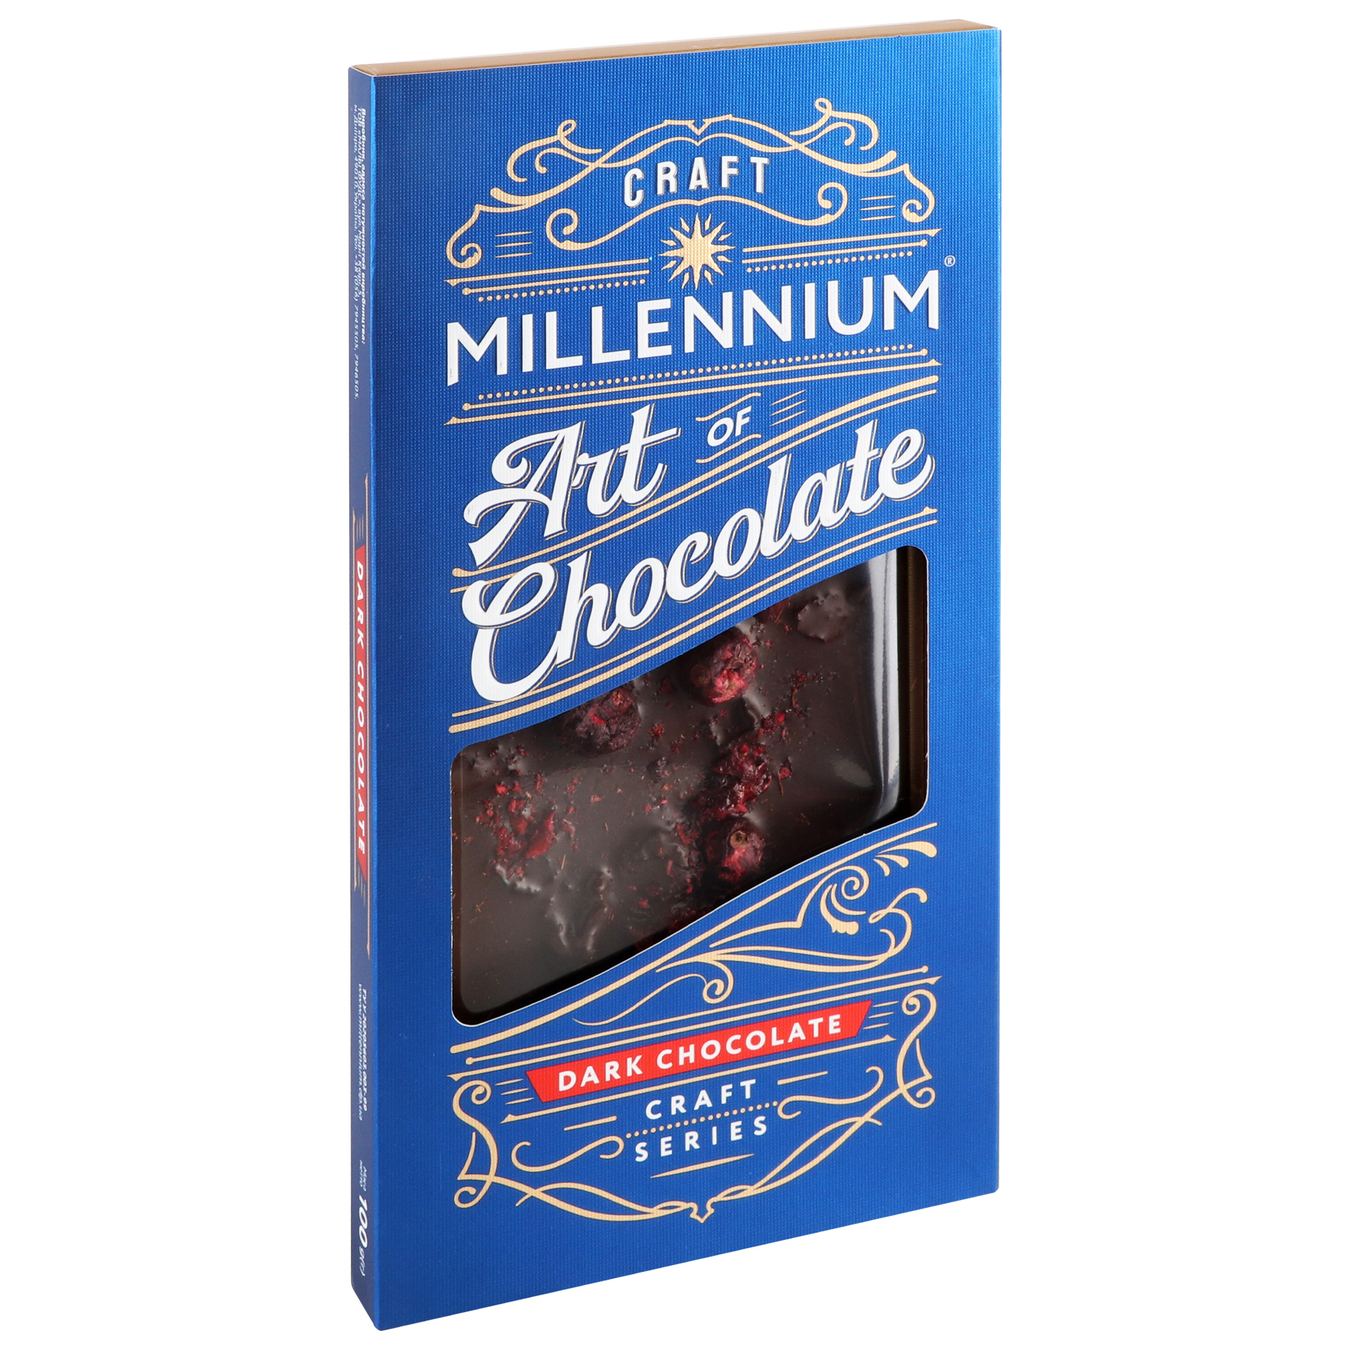 Шоколад Millennium Series черный с вишней, смородиной и клюквой 100г 2